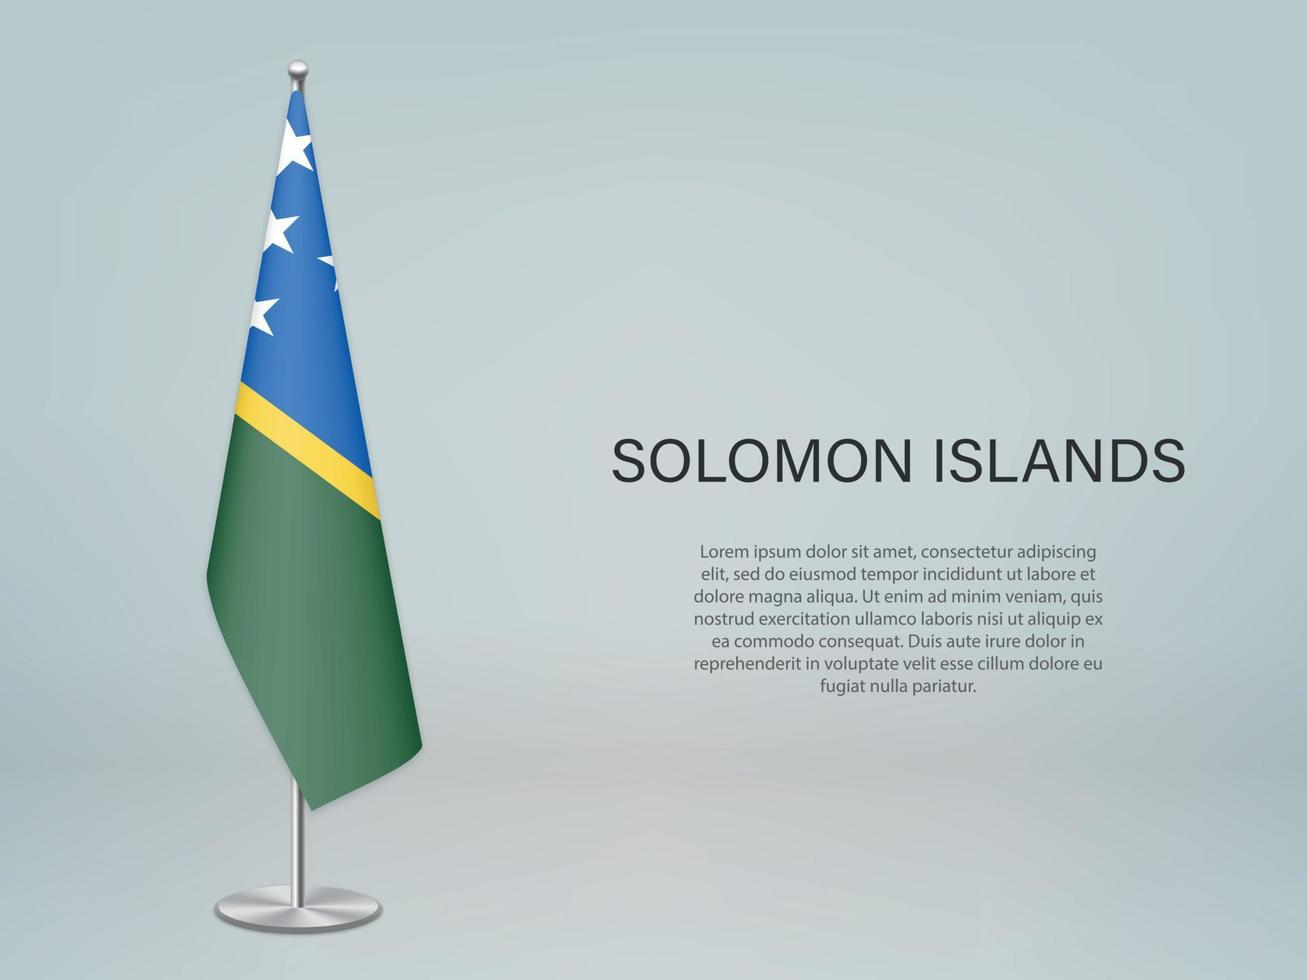 salomonöarna hängande flagga på stativ. mall för konferens ba vektor